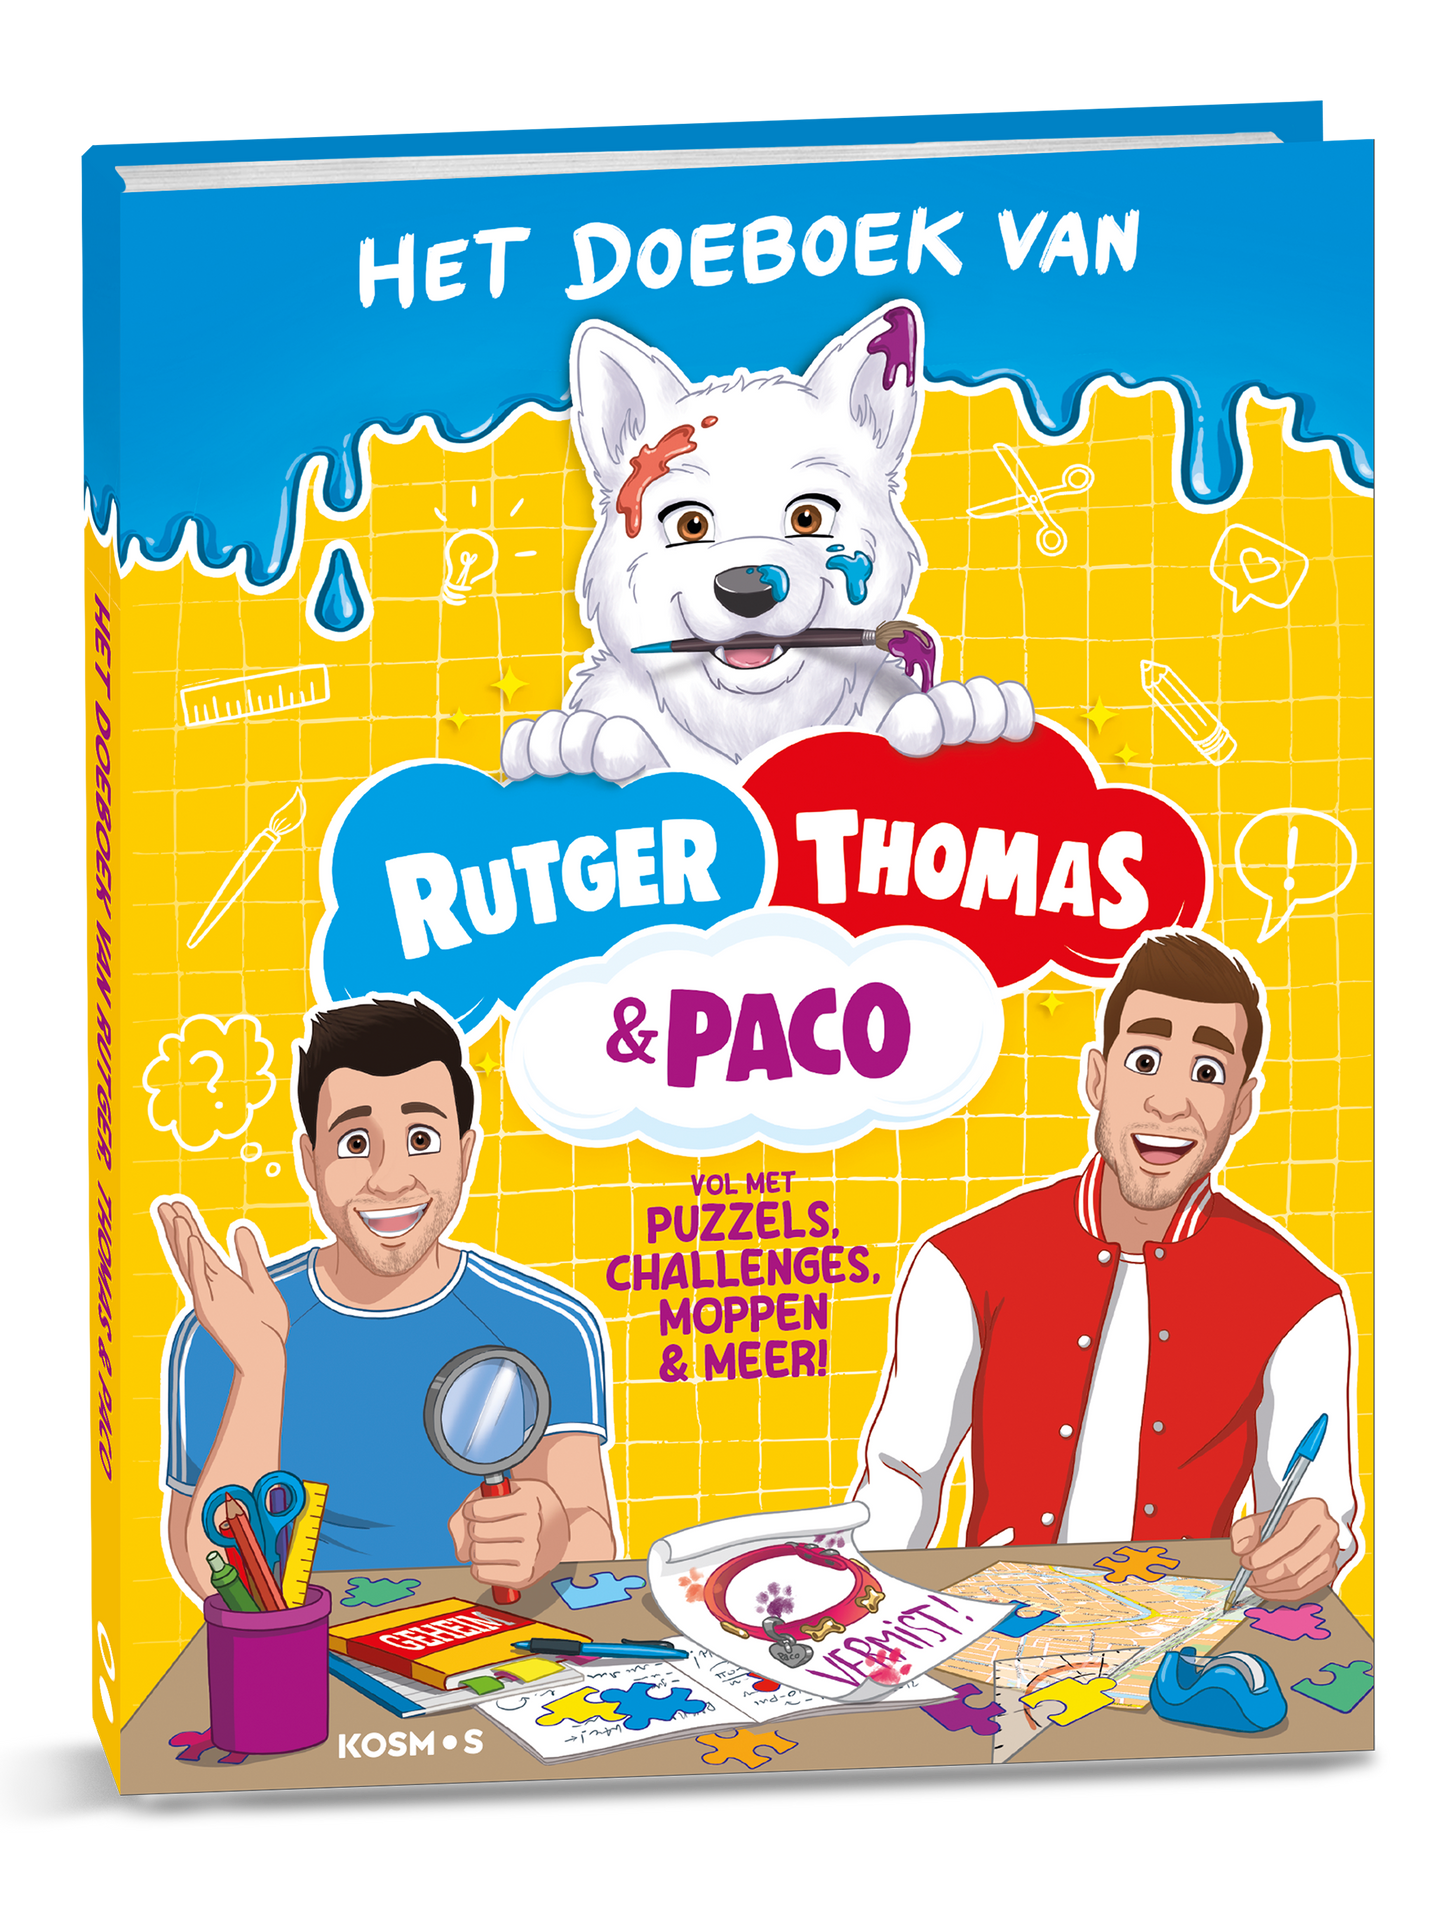 Het Doeboek van Rutger, Thomas & Paco